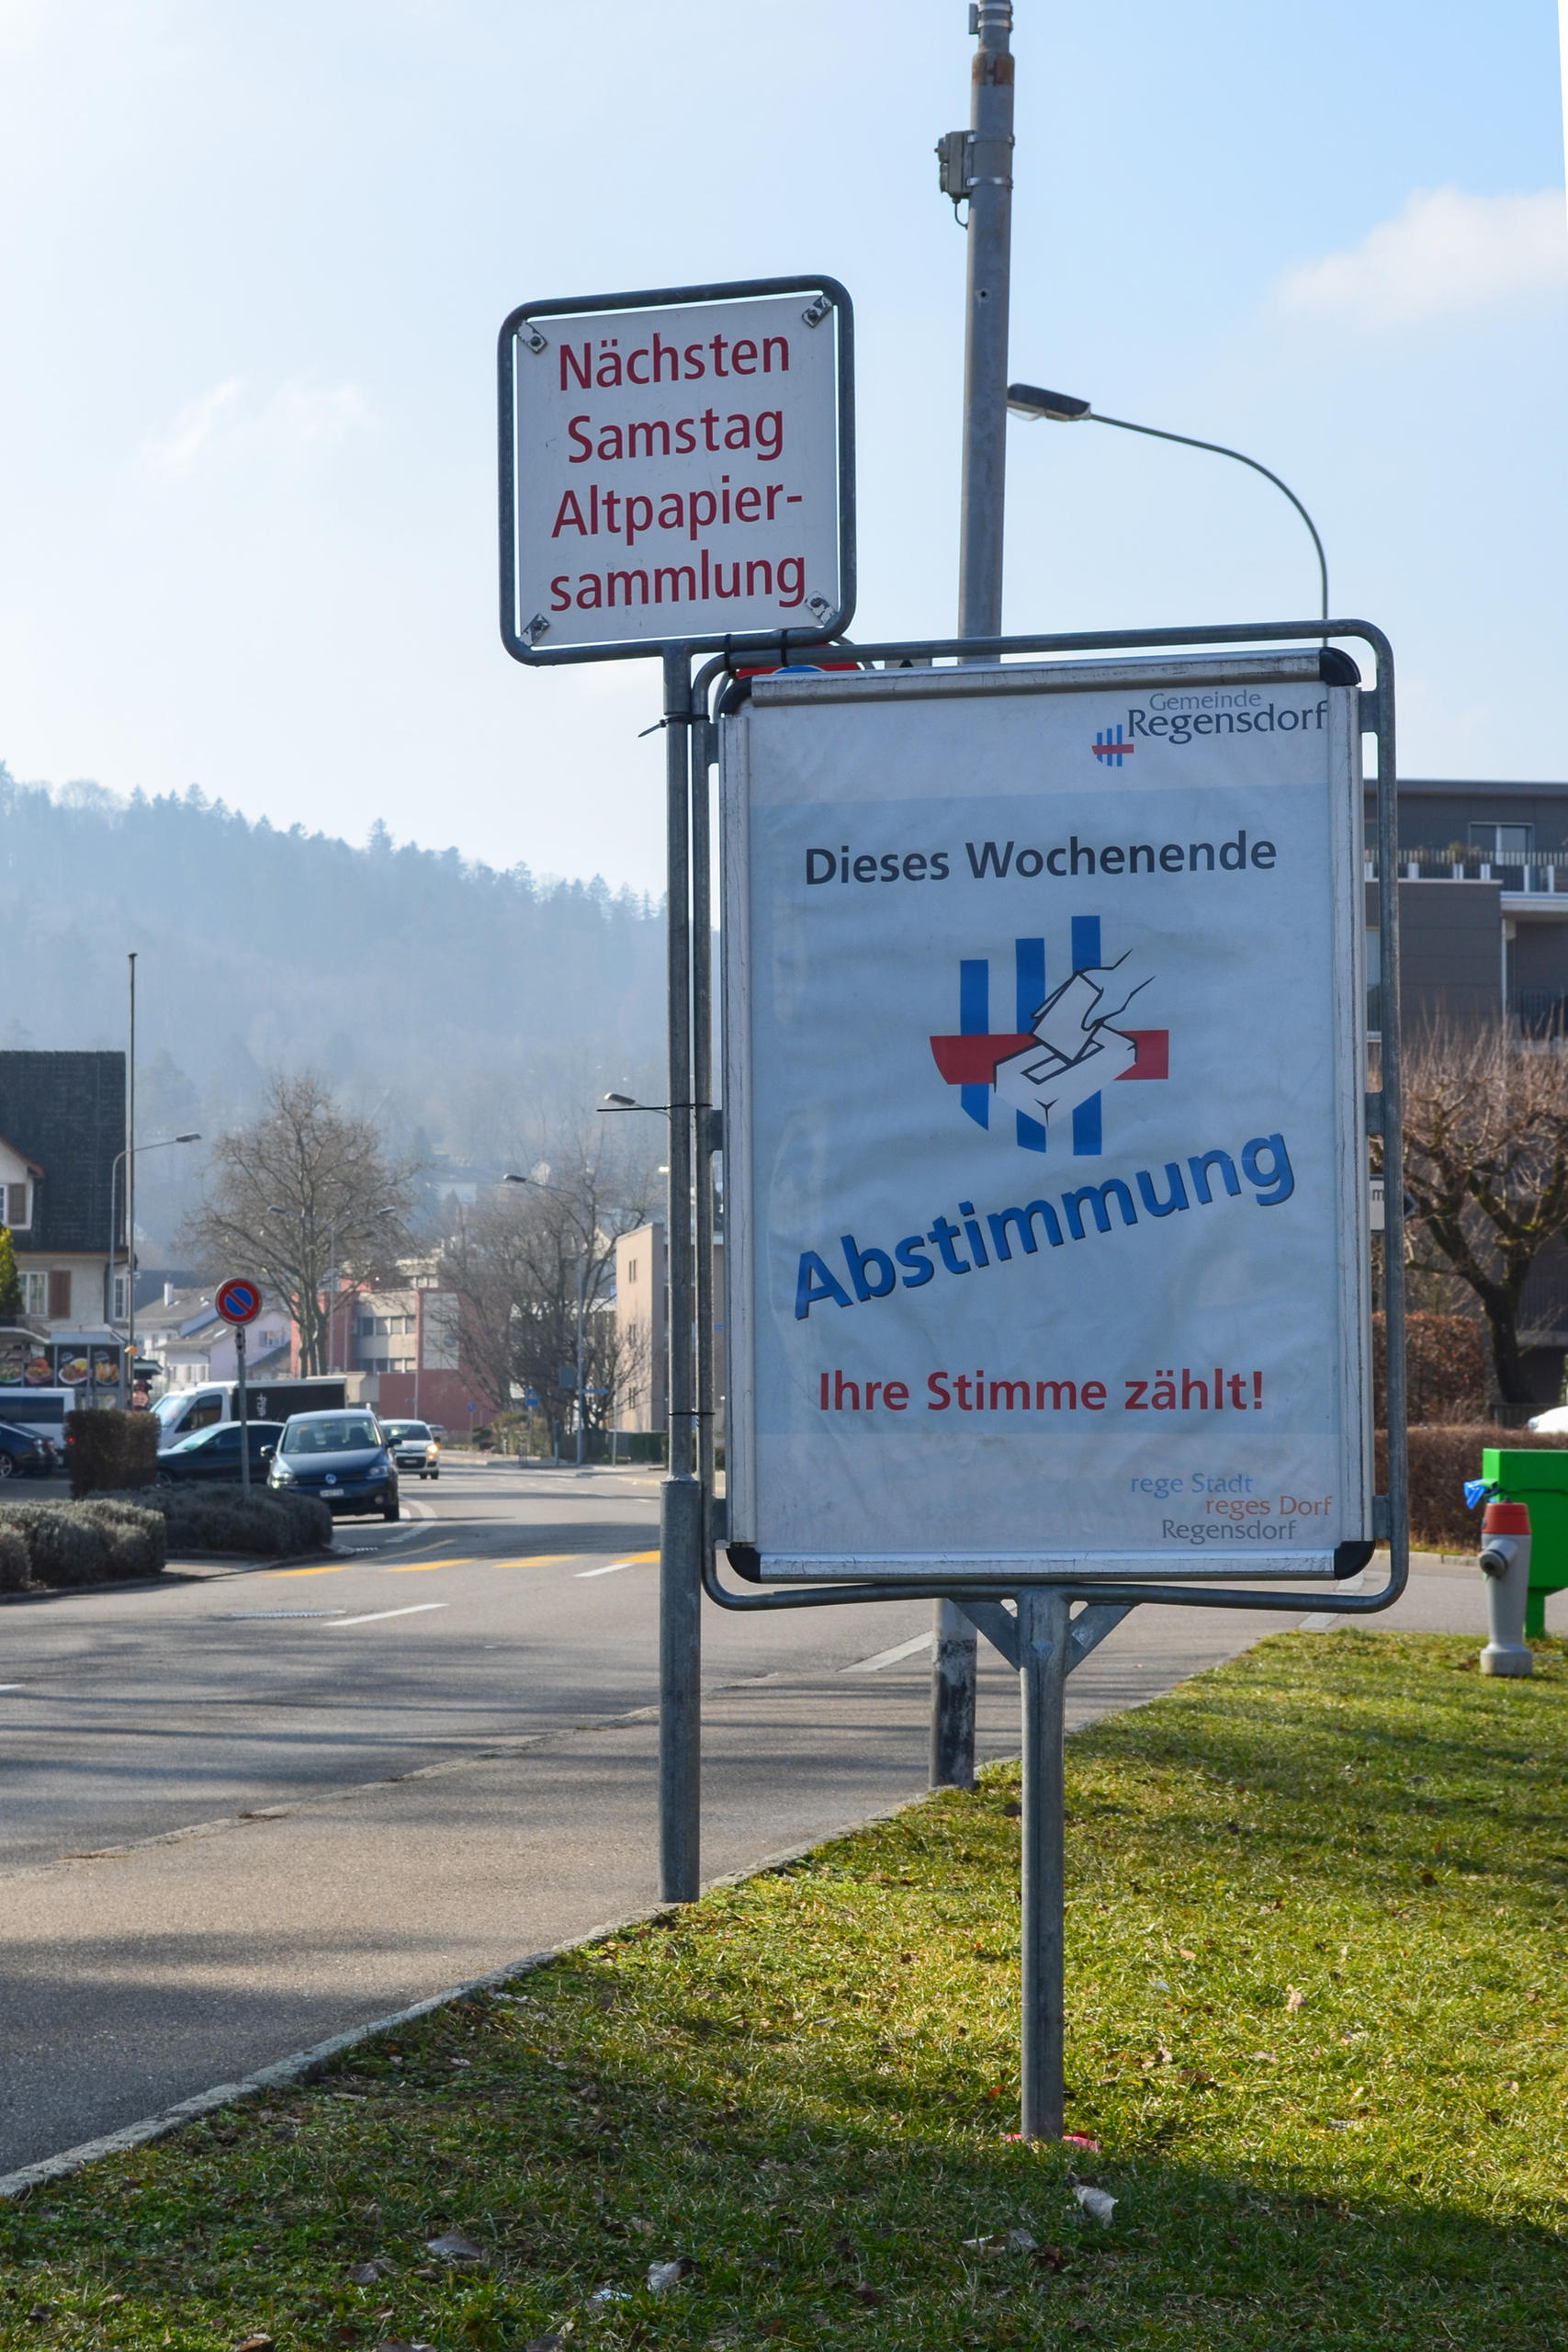 Affiche de votation à Regensdorf